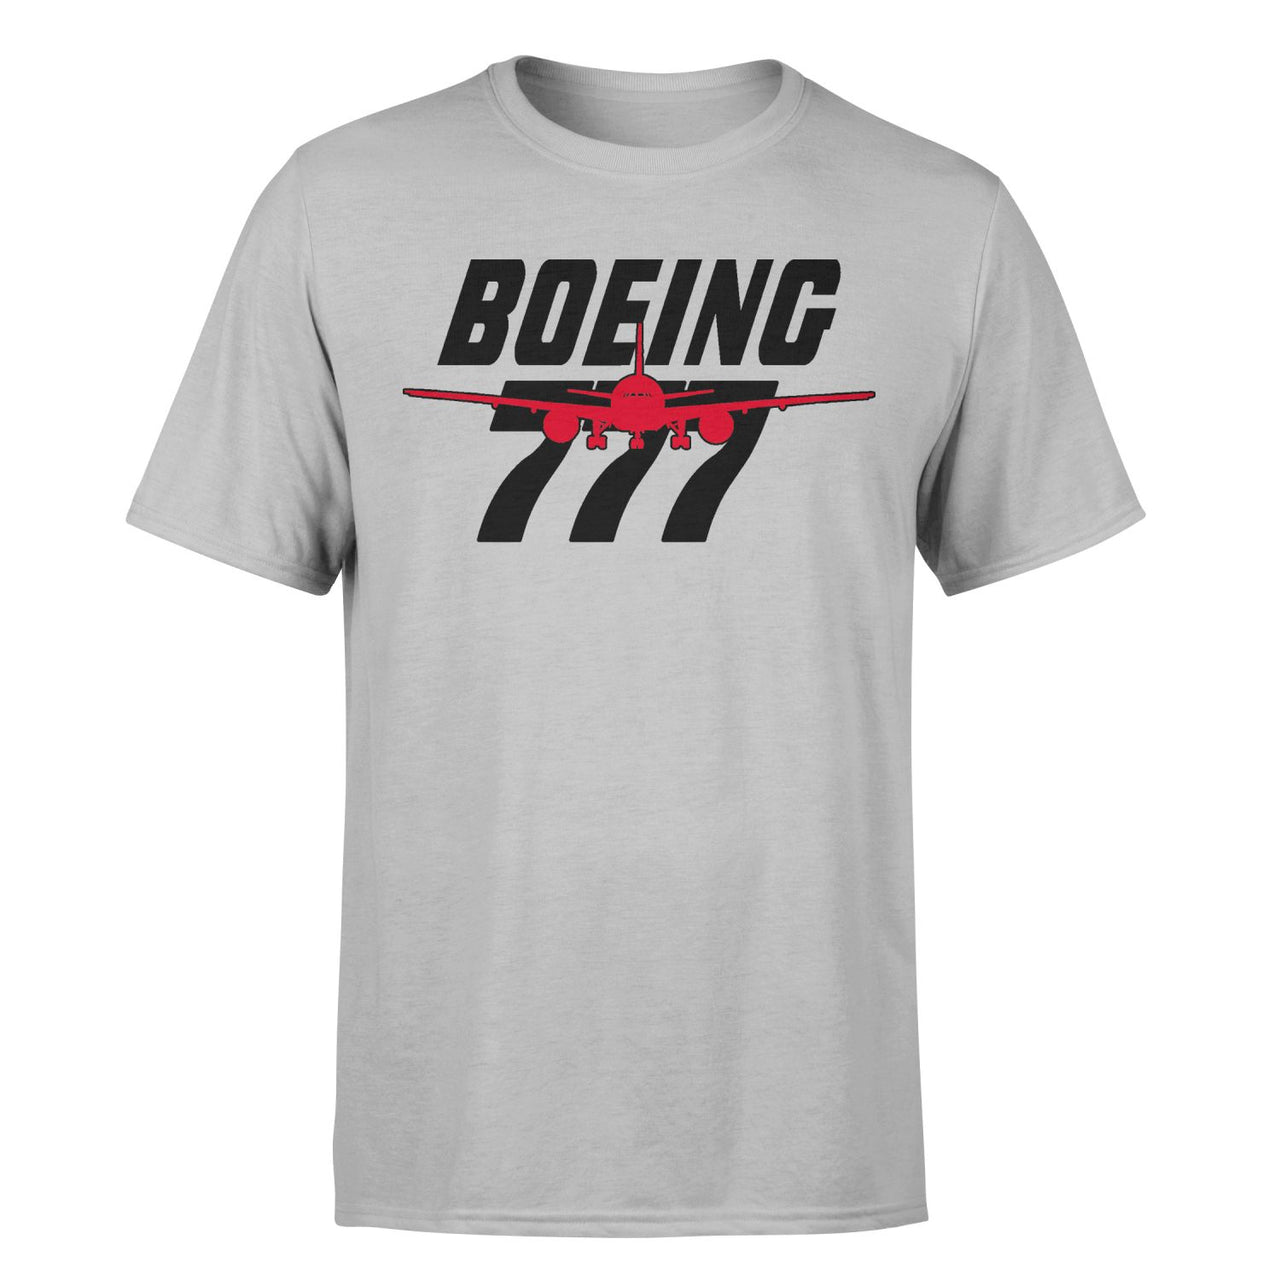 Amazing Boeing 777 Designed T-Shirts